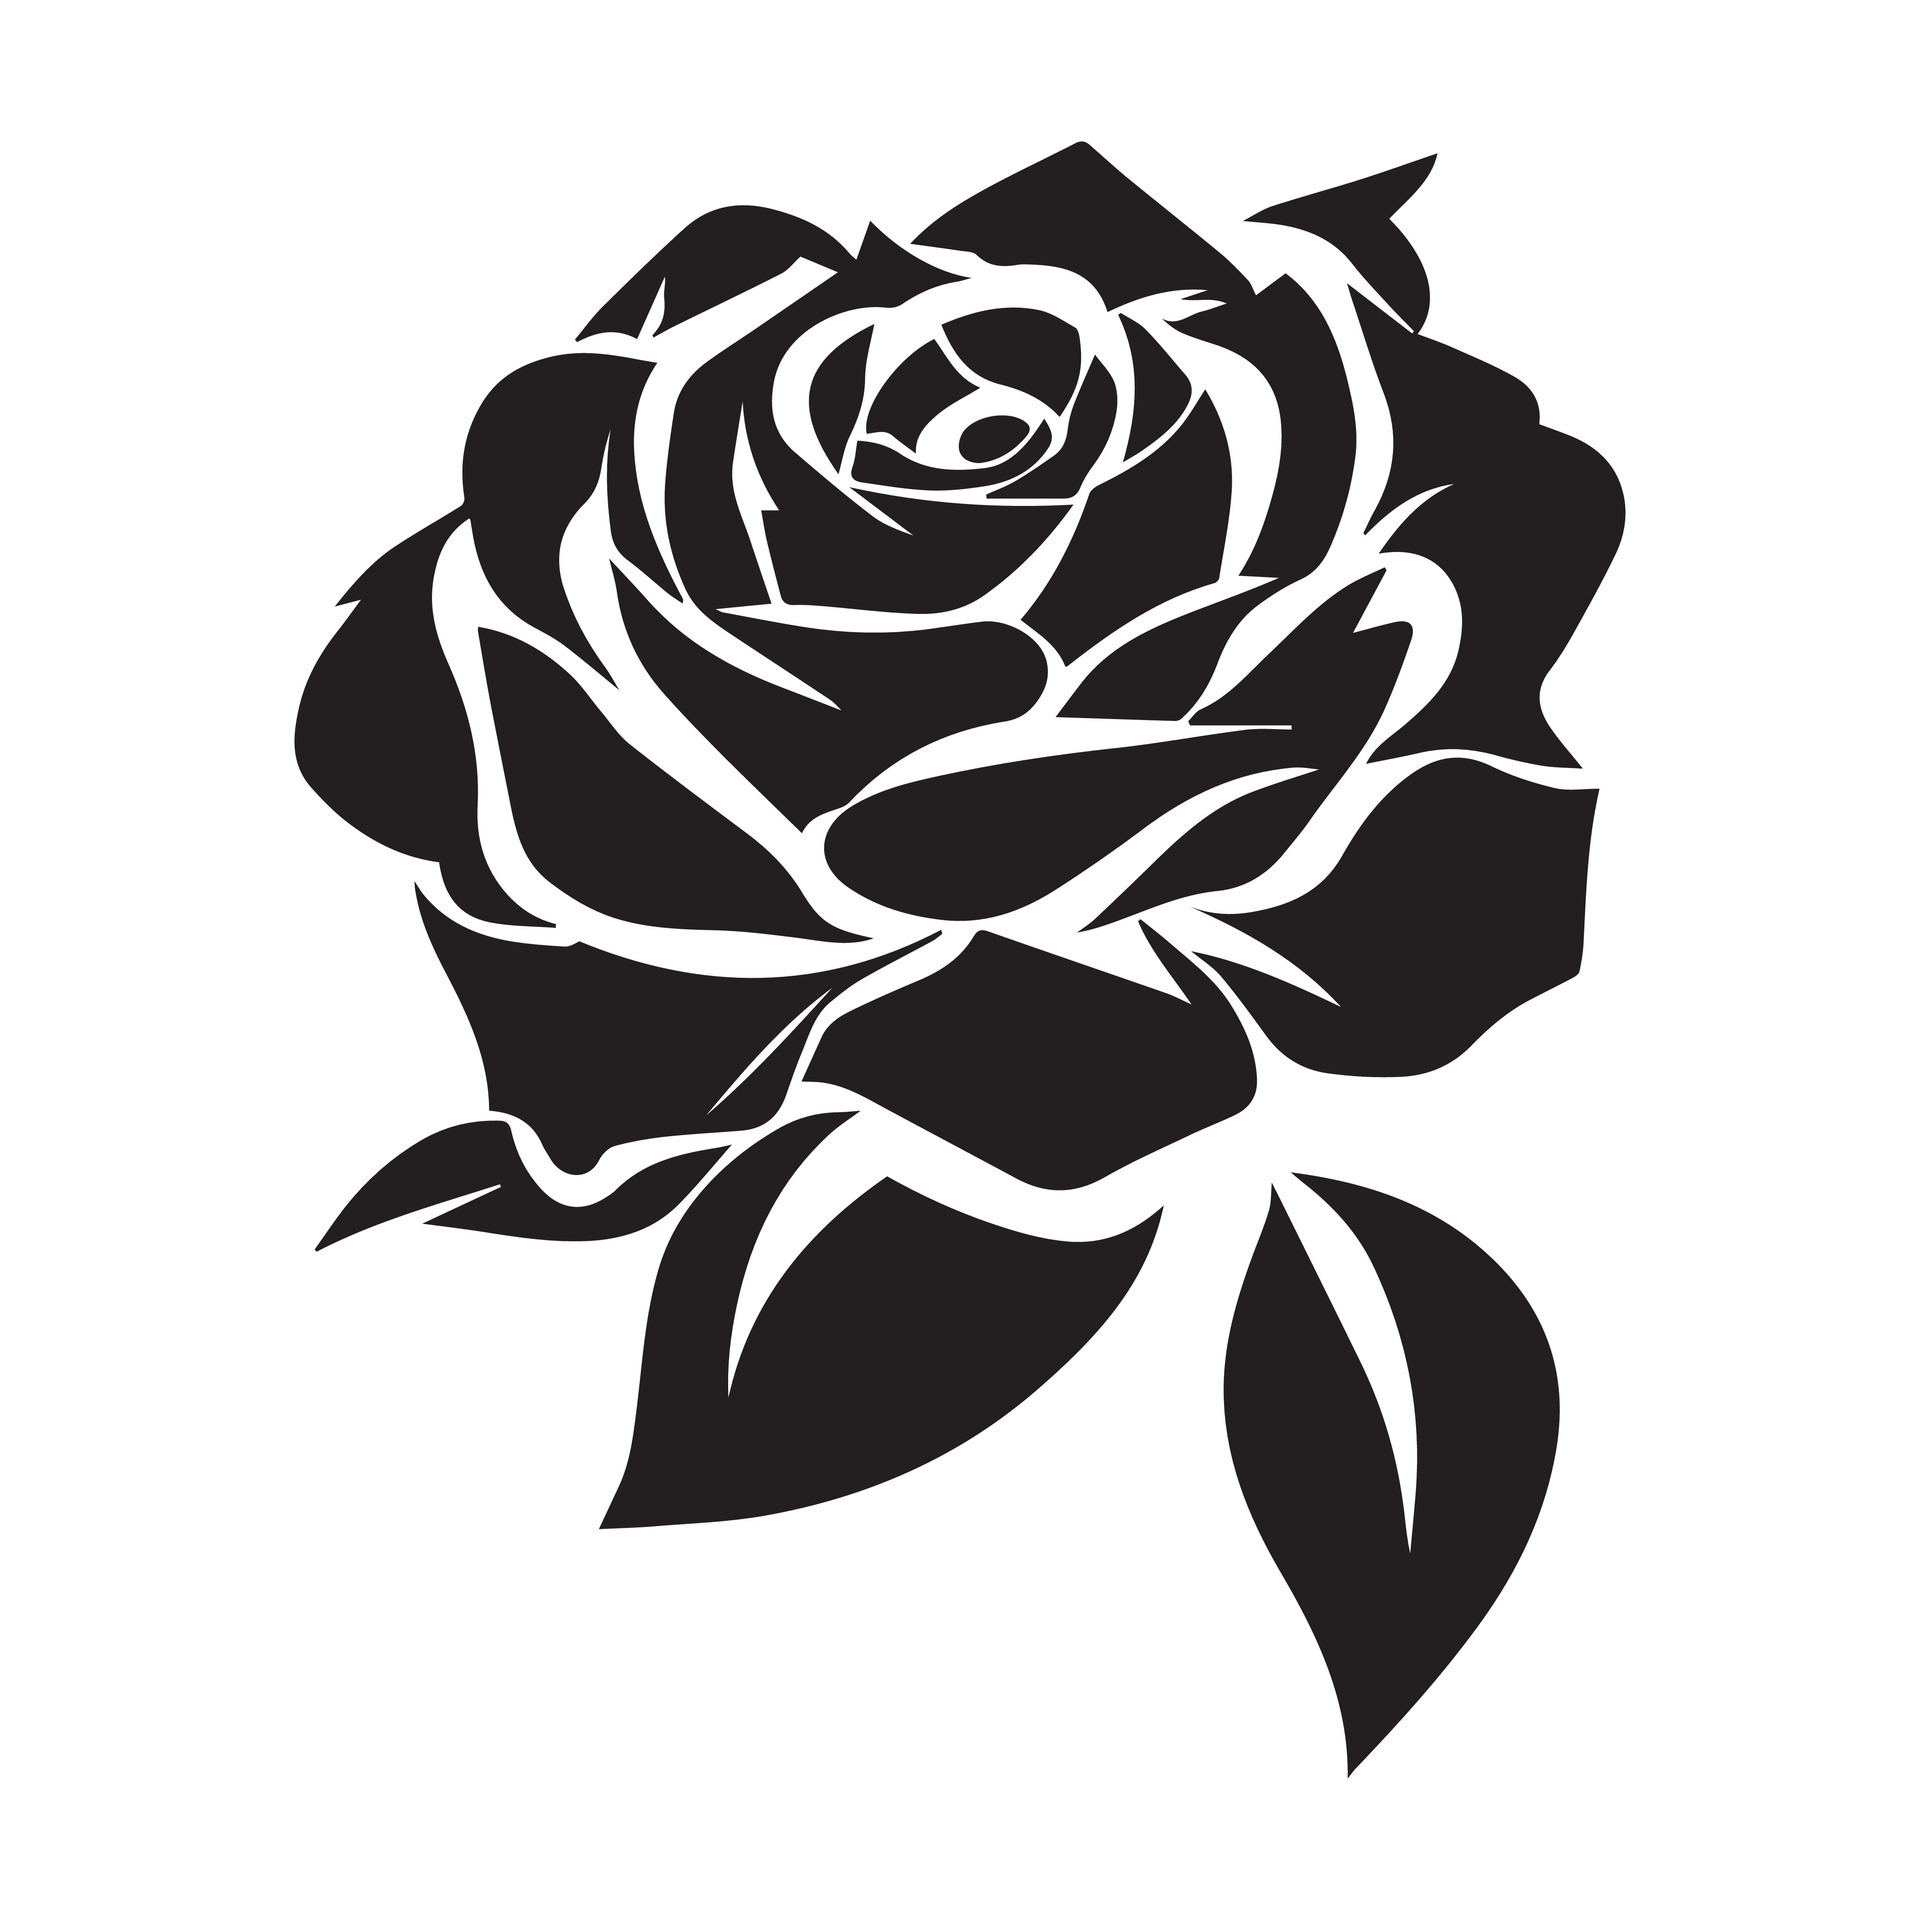 Aufkleber Schwarz Silhouette der Rose mit Stiel. Vektor-Illustration. 